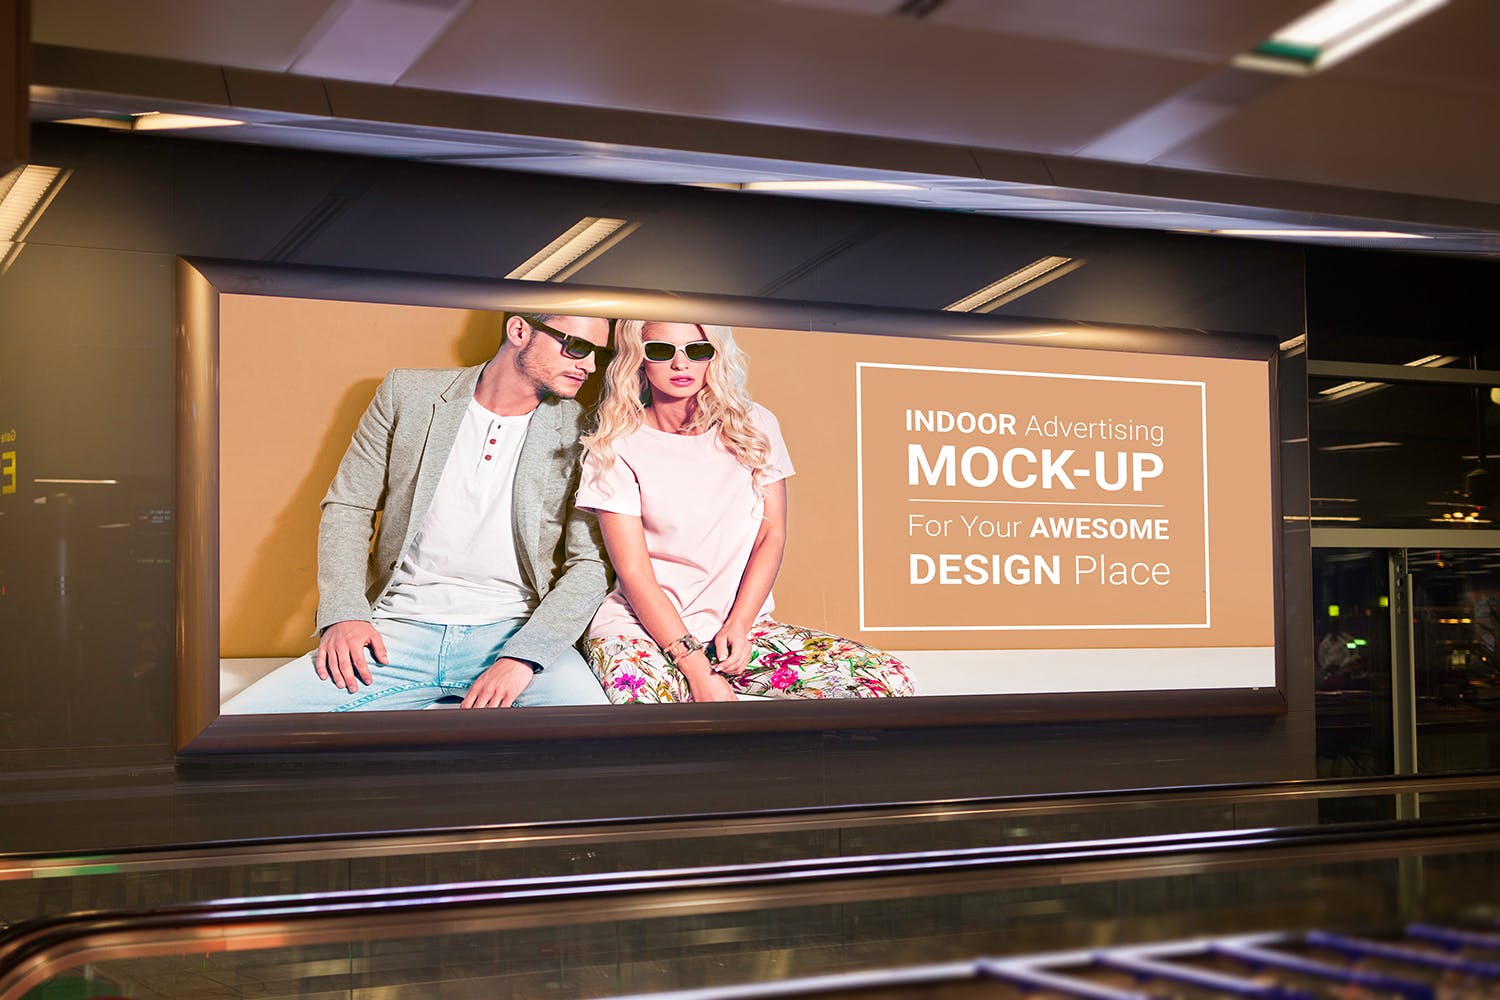 室内广告牌图片效果图样机模板 Indoor Advertising Mock-Up插图6